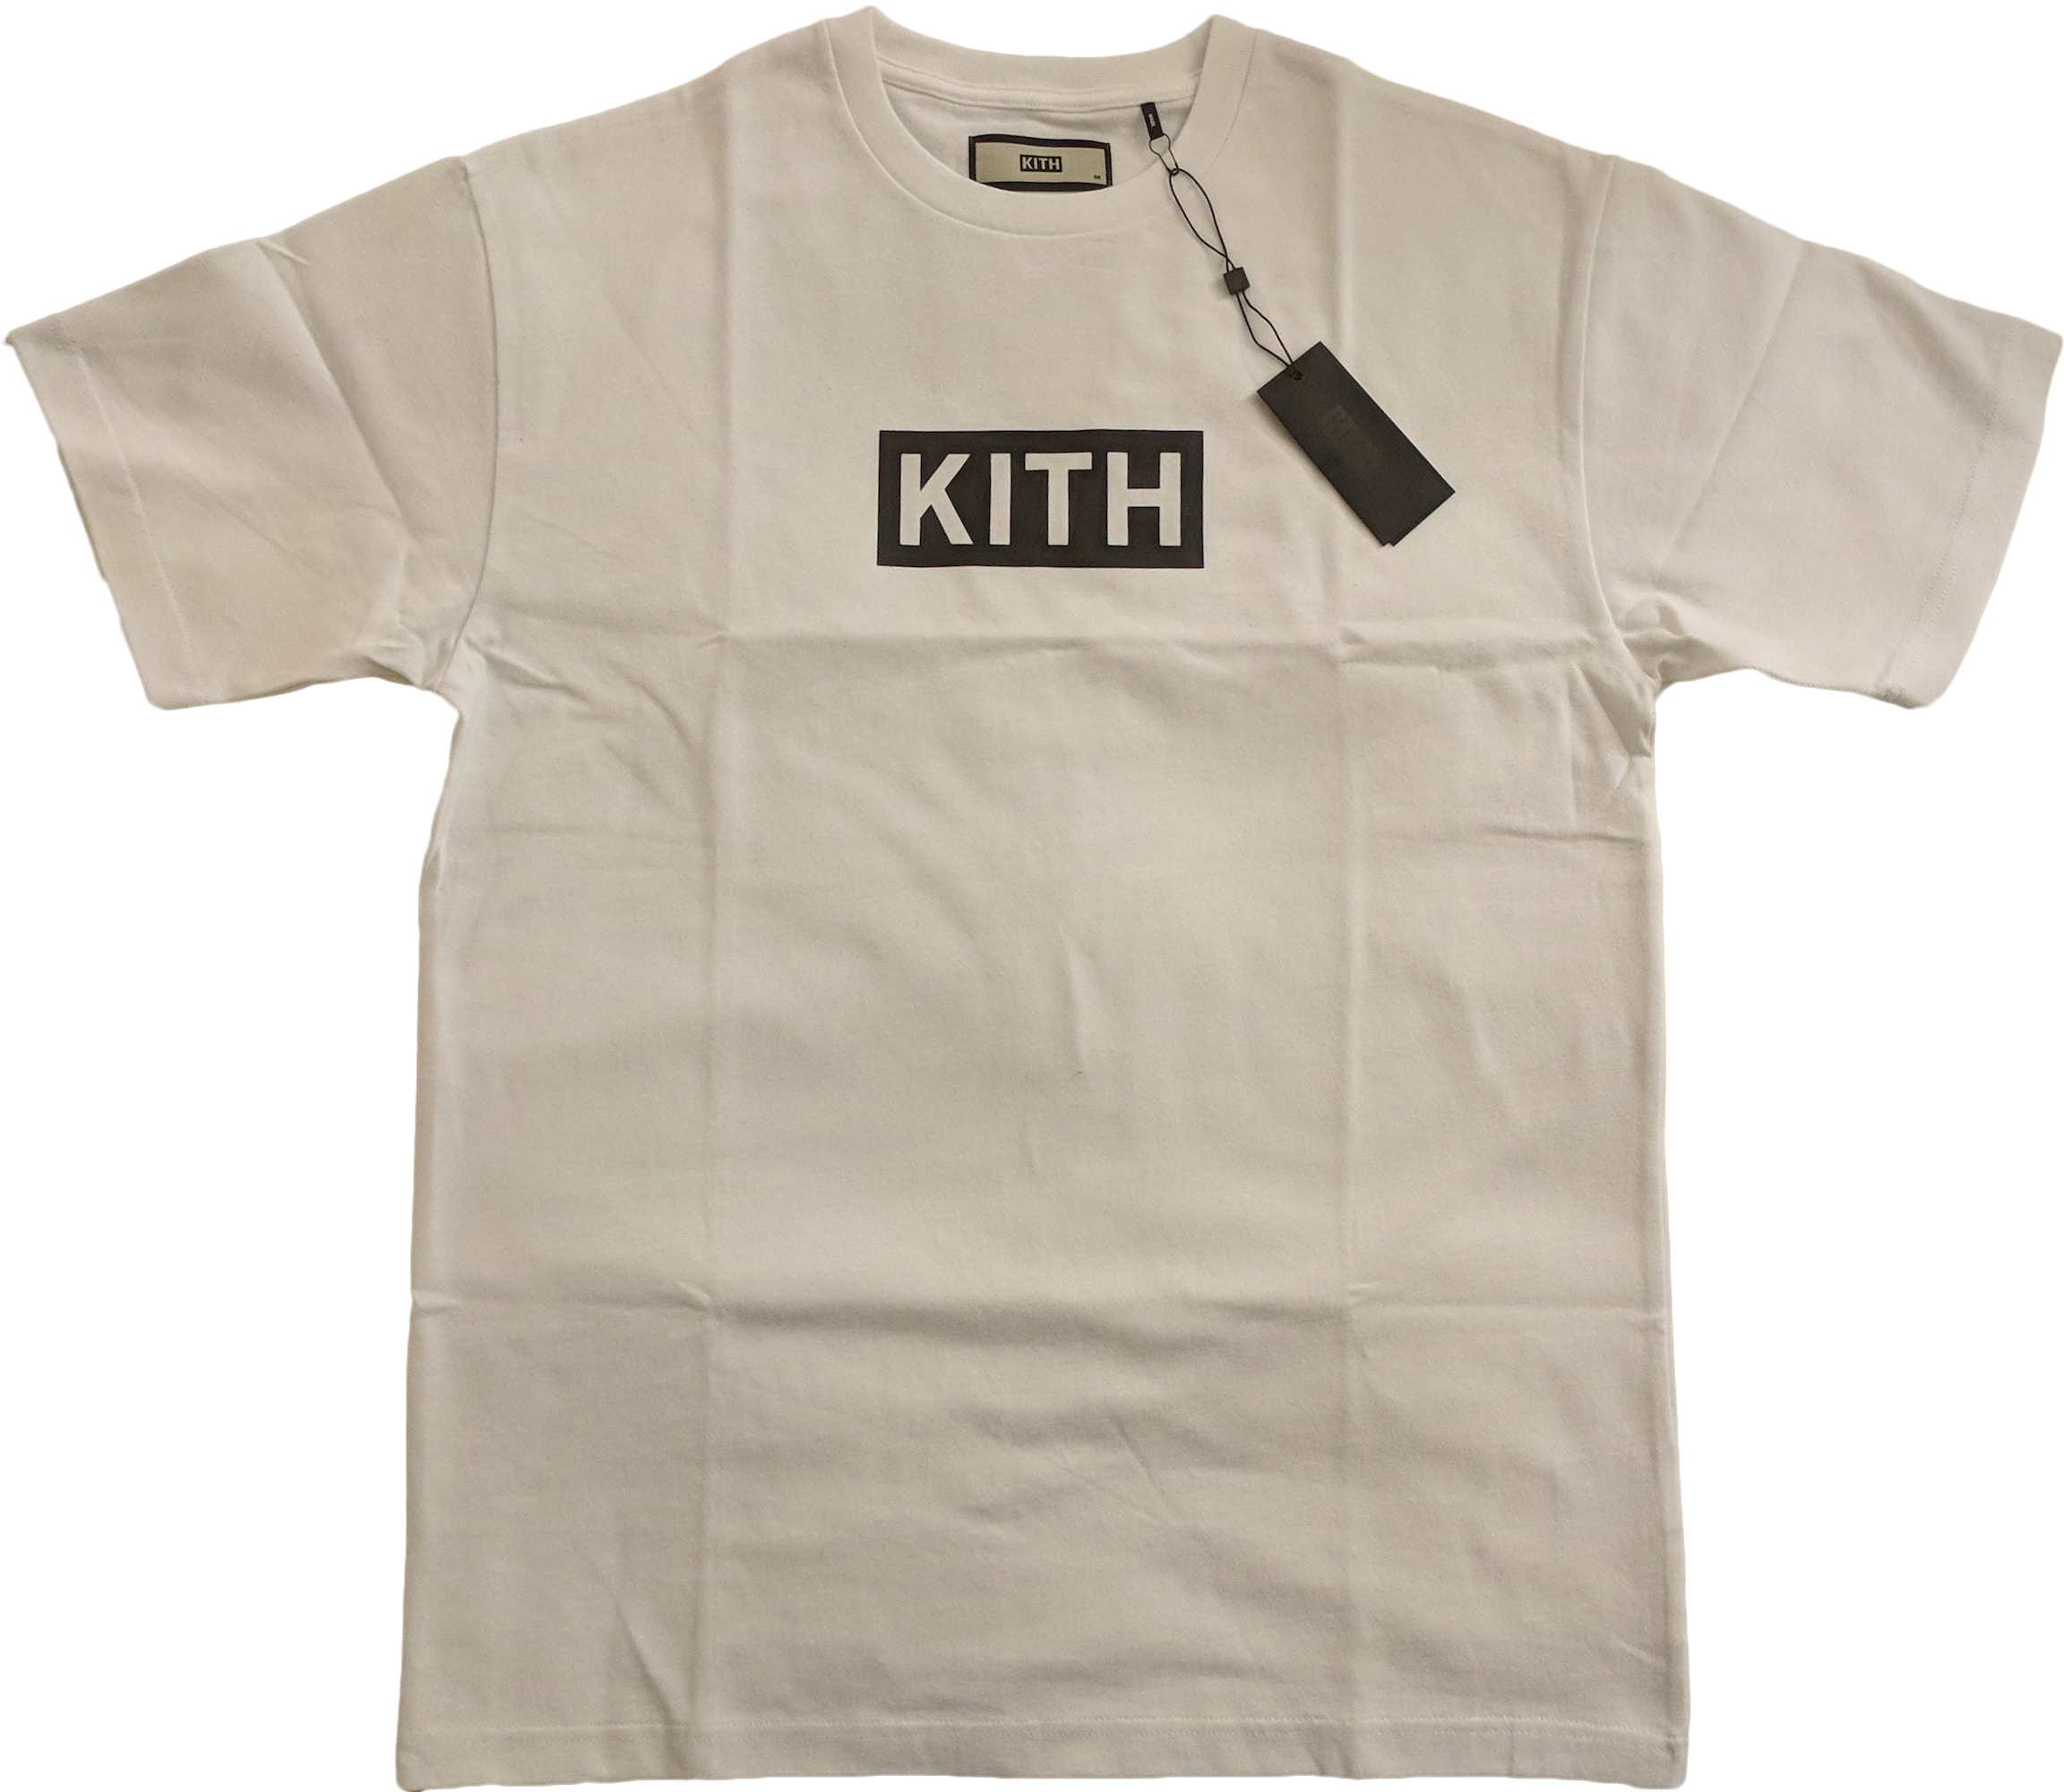 Kith Classic Logo Tee White/Black - SS18